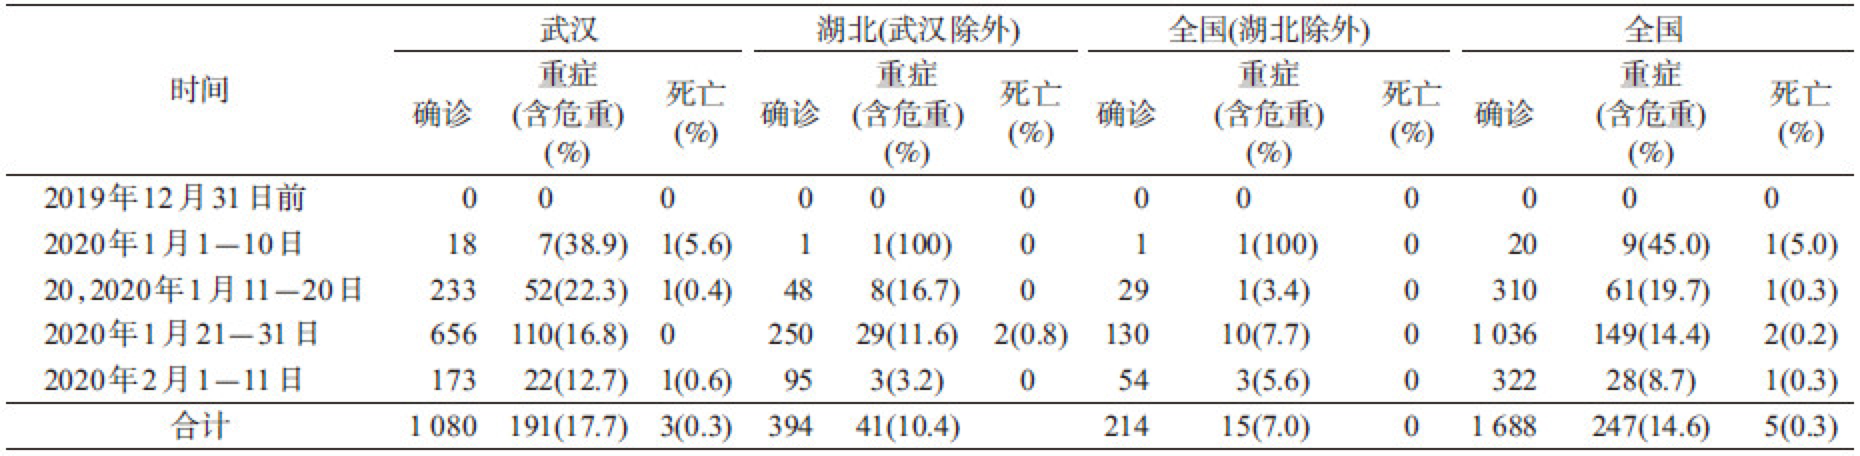 中疾控报告:超三千名医护感染新冠病毒 确诊1716例 